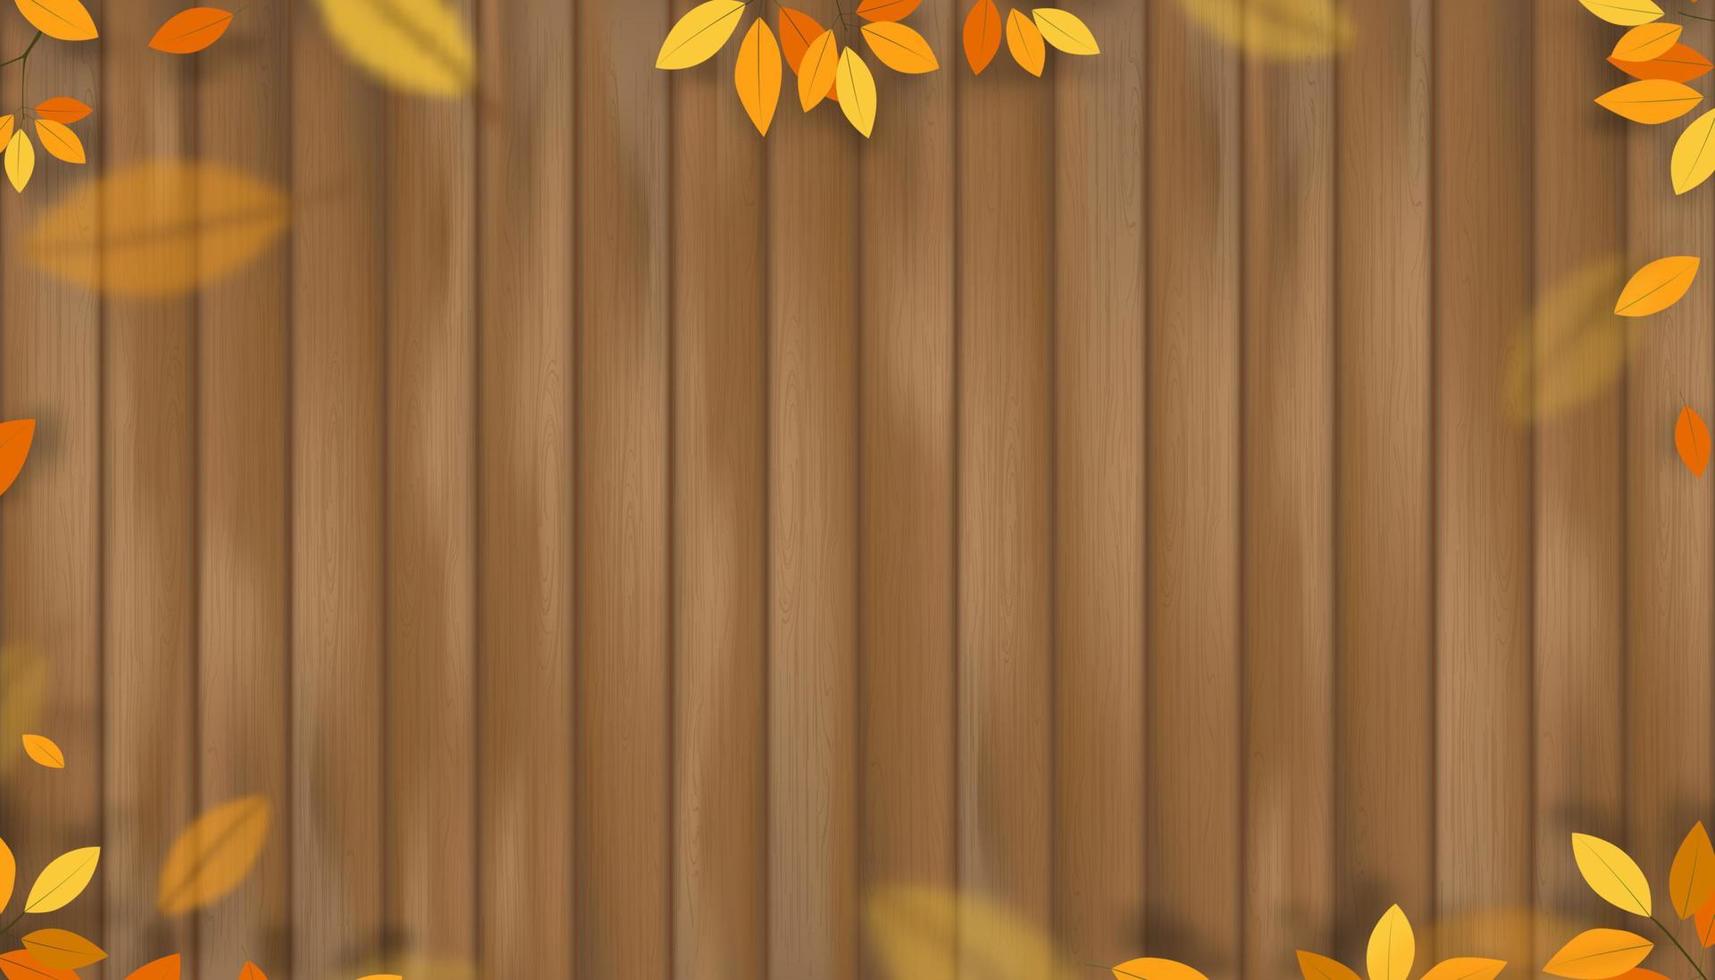 höstlöv på trä bakgrund, vektor illustration naturliga vilda löv kvistar klättring på brun staket plank.fall bakgrund banner med träskiva panel med grenar orange och gula löv kant